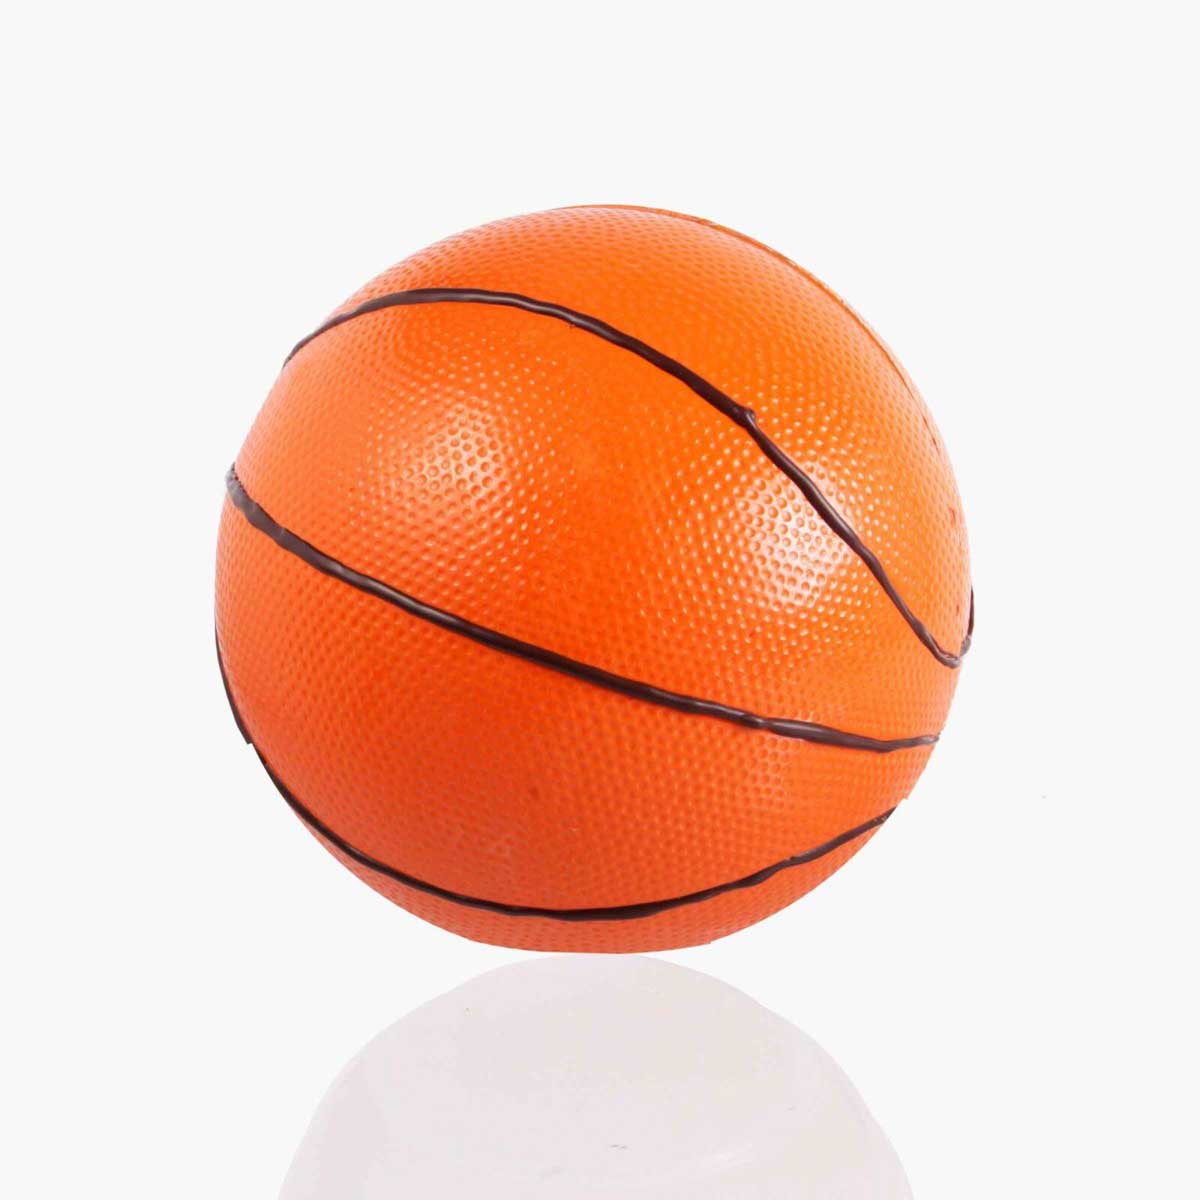 Mona de chocolate de una pelota de basquet 